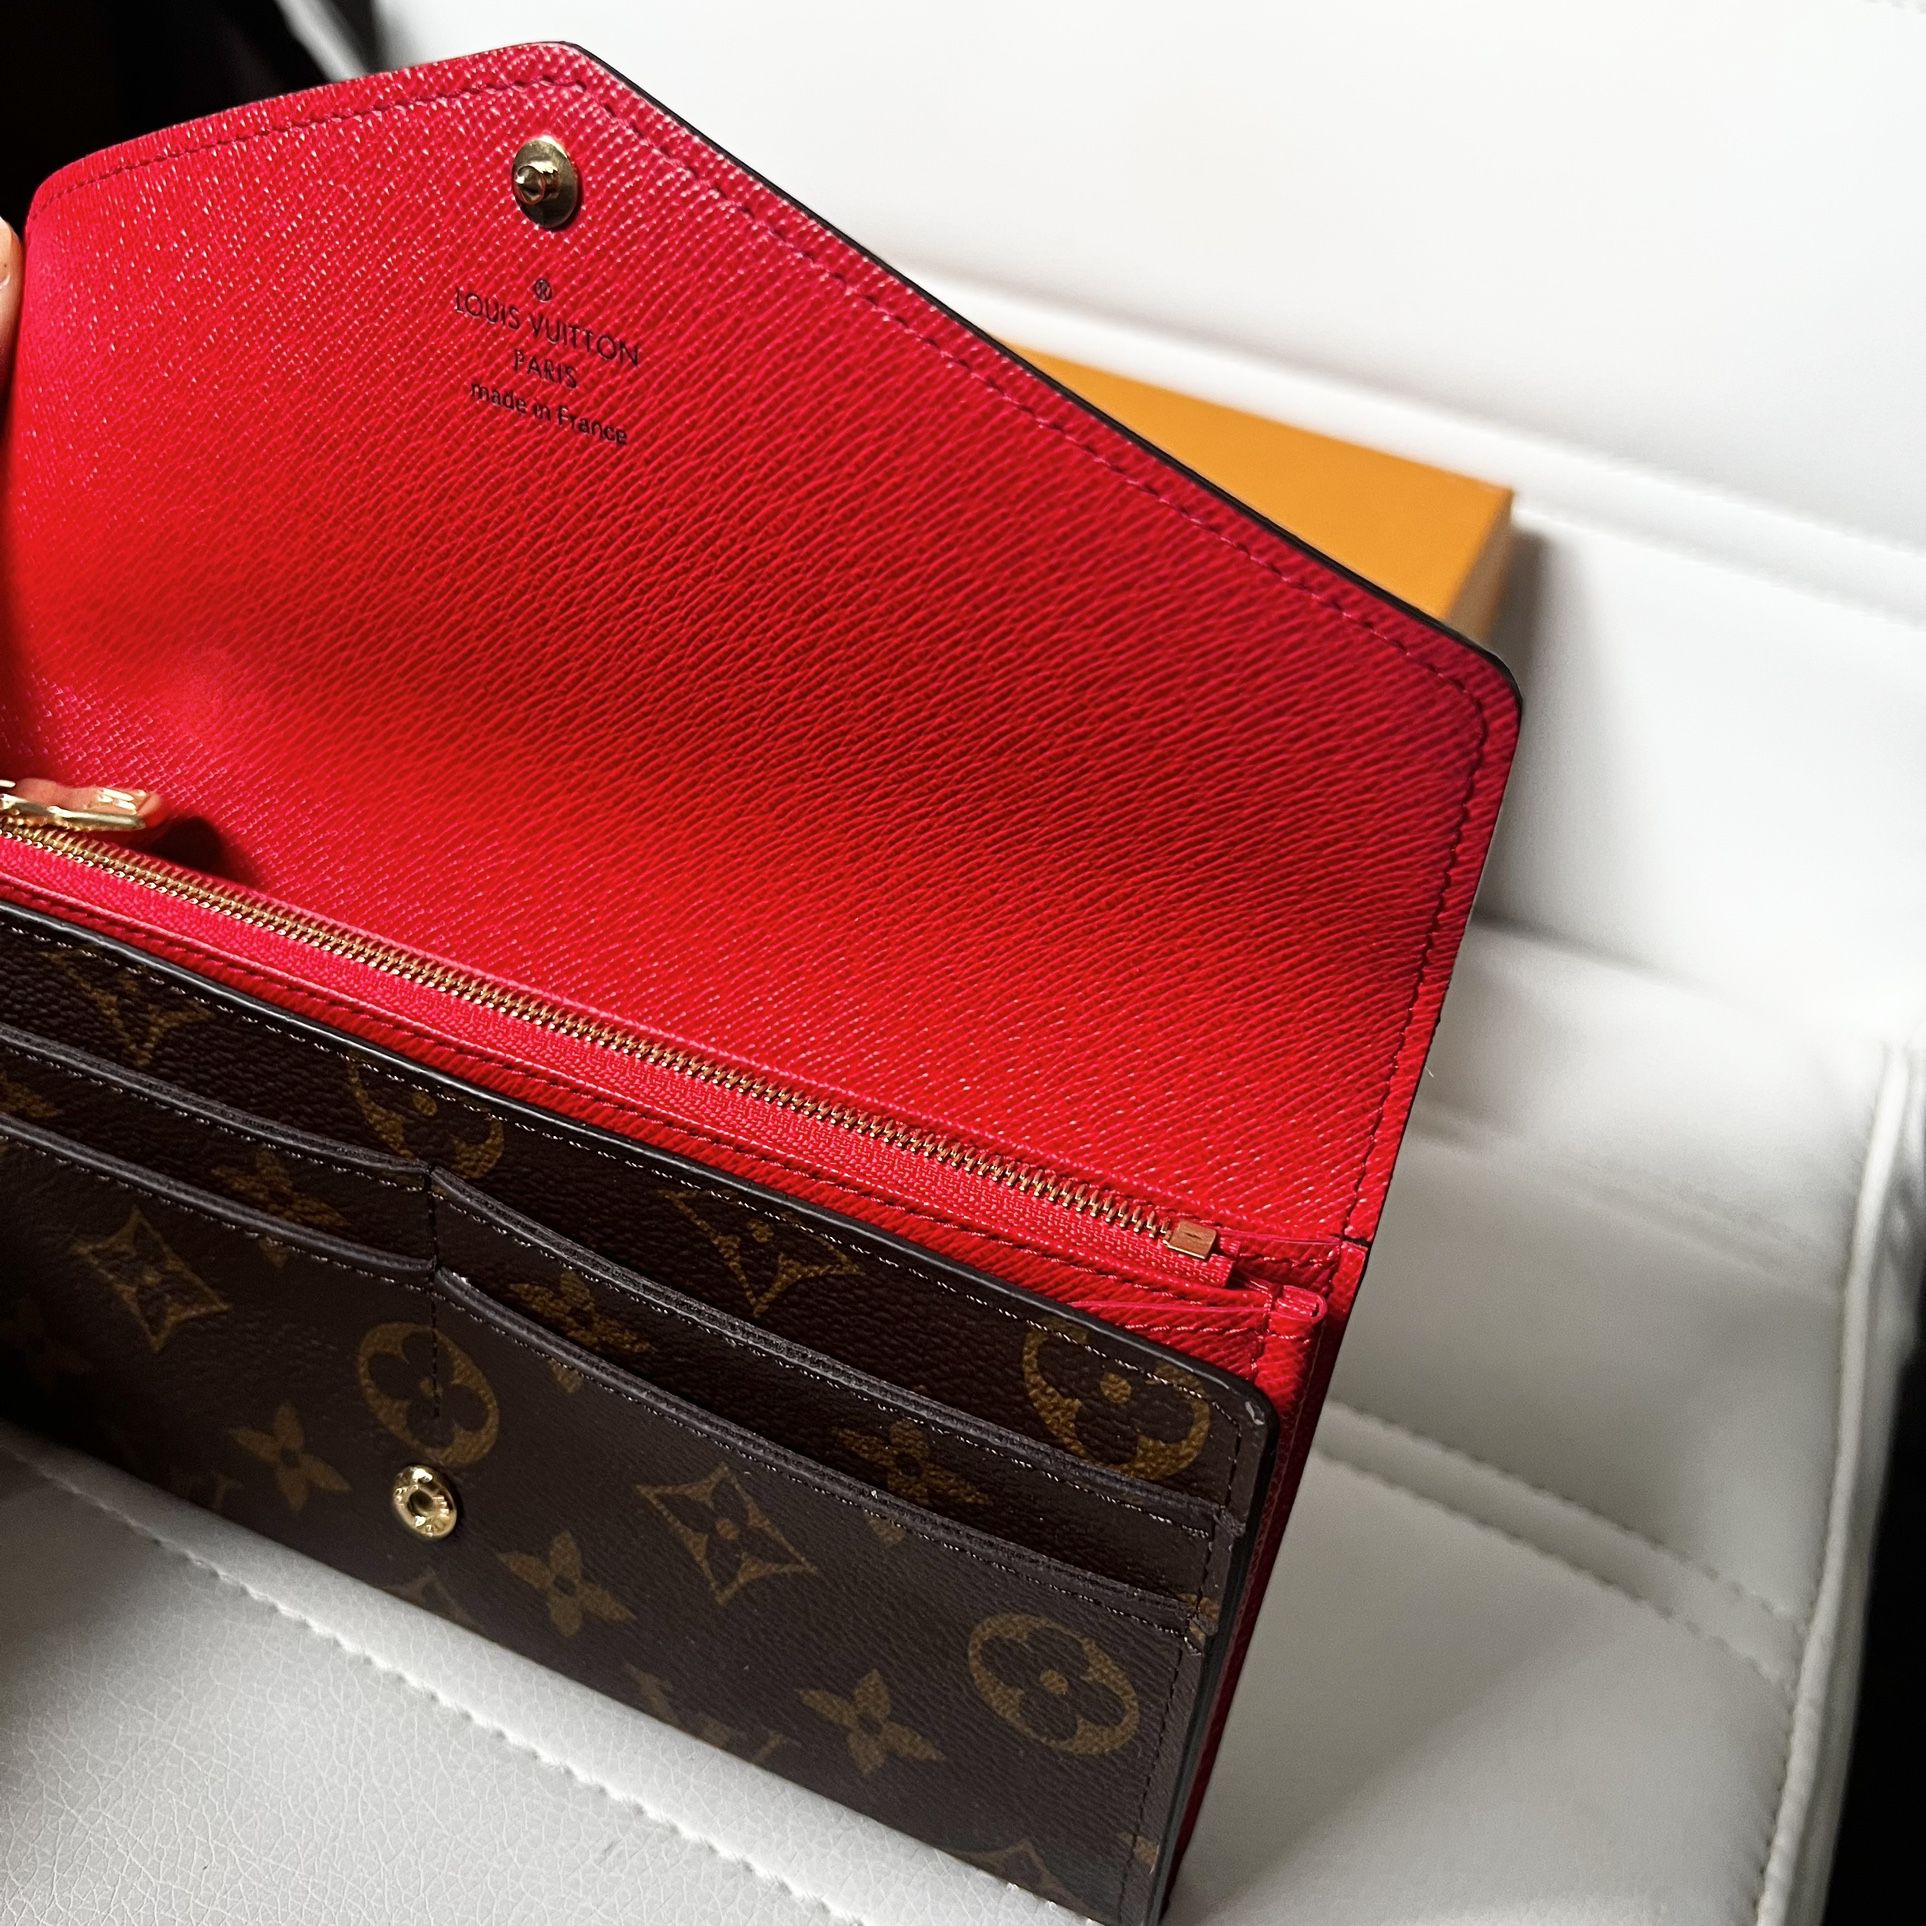 Authentic Louis Vuitton 'Sarah' Wallet for Sale in Mililani, HI